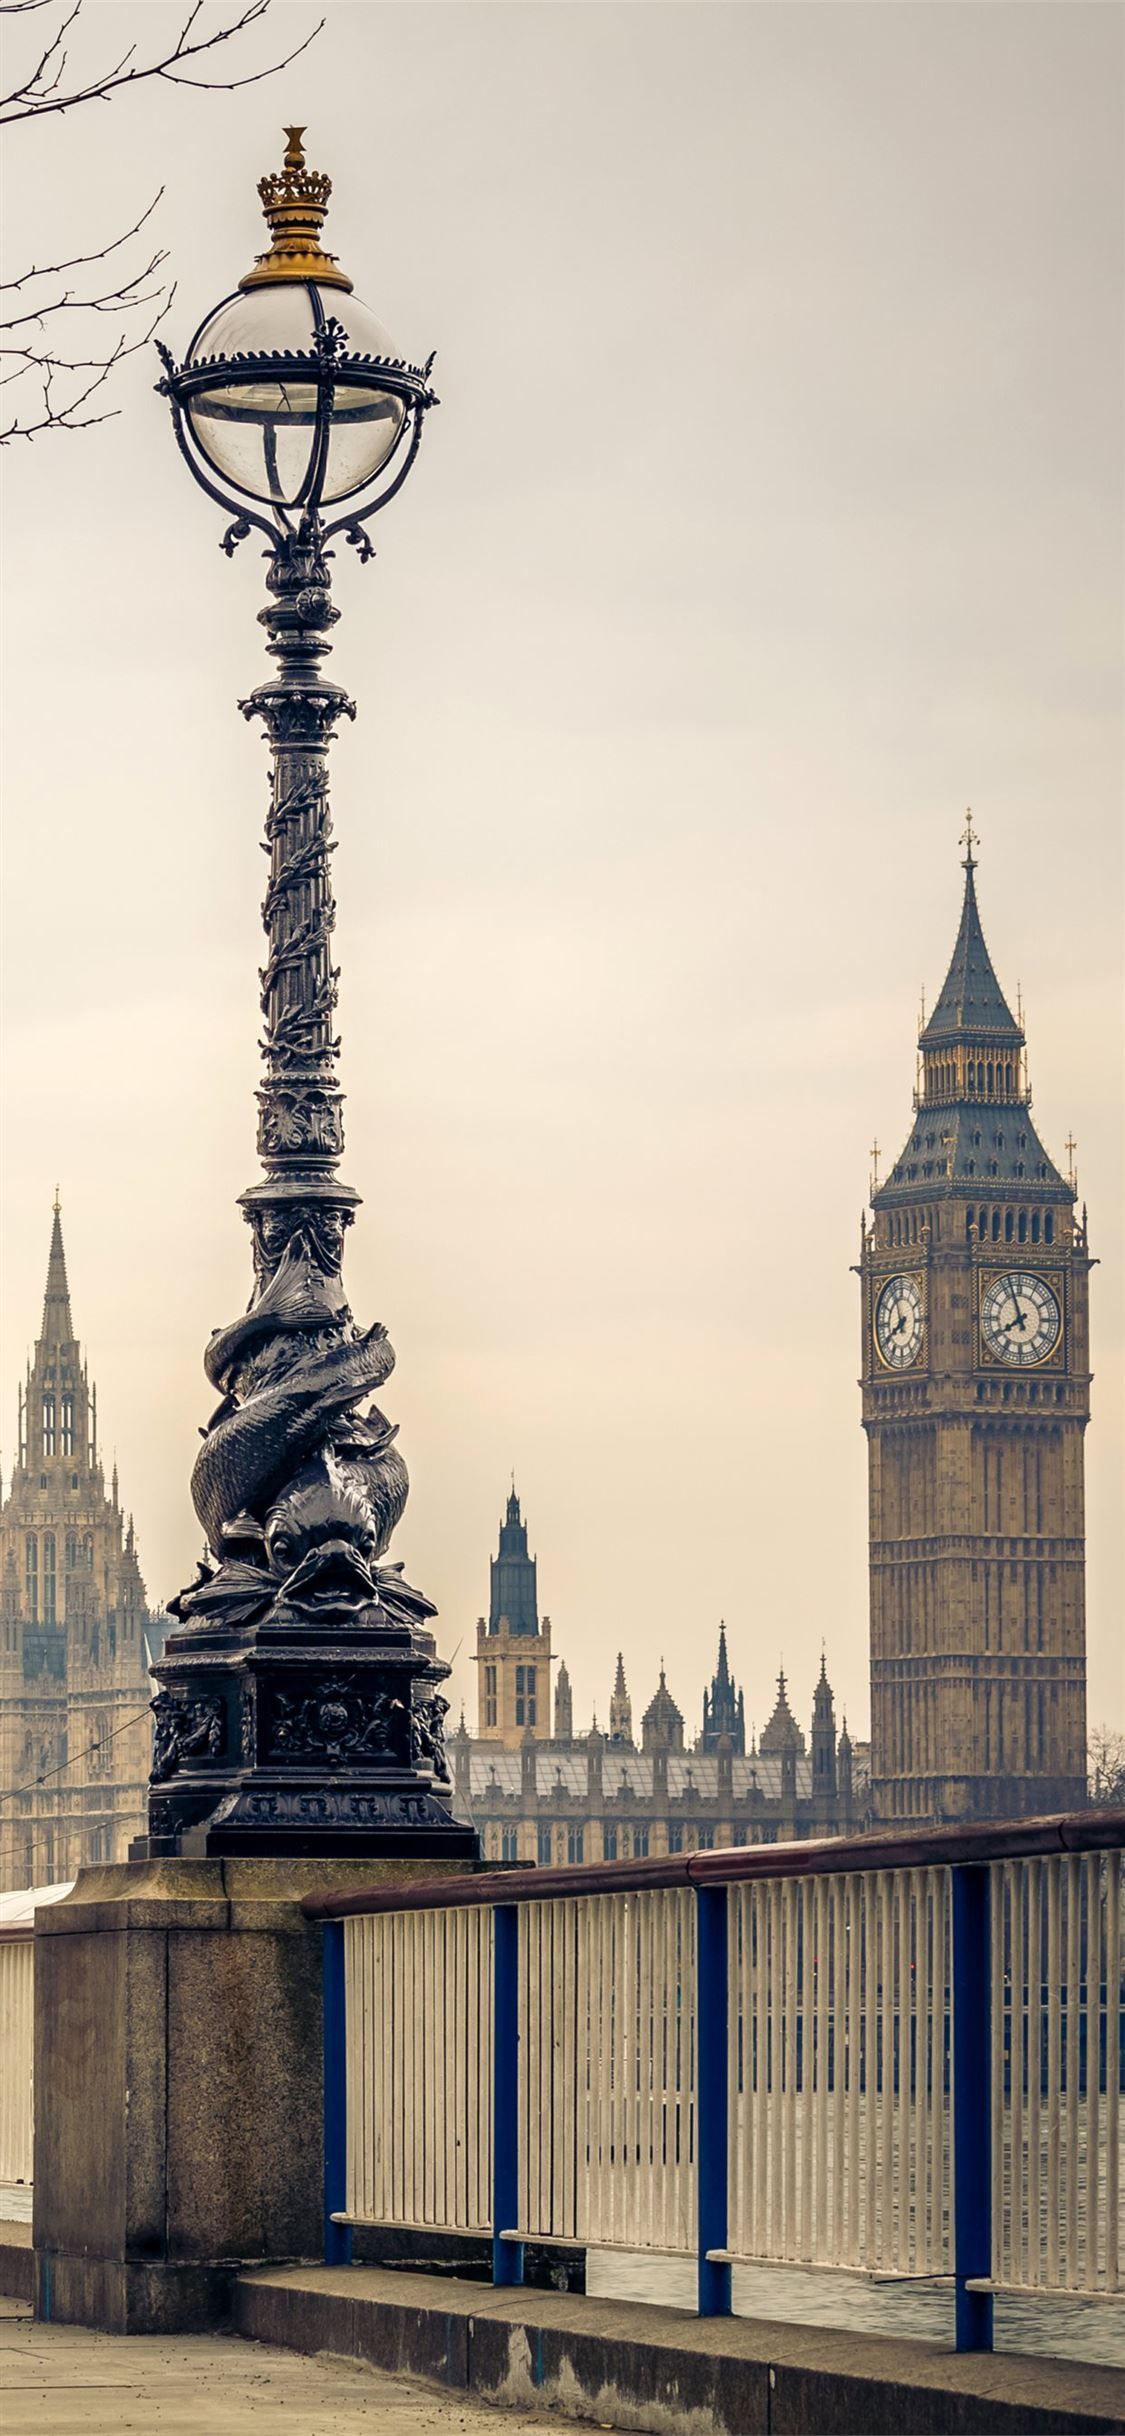 Westminster Palace #WestminsterPalace mostbeautifulplacestovisit #England #unitedkingdom #iPhoneX. London wallpaper, Europe wallpaper, iPhone wallpaper london